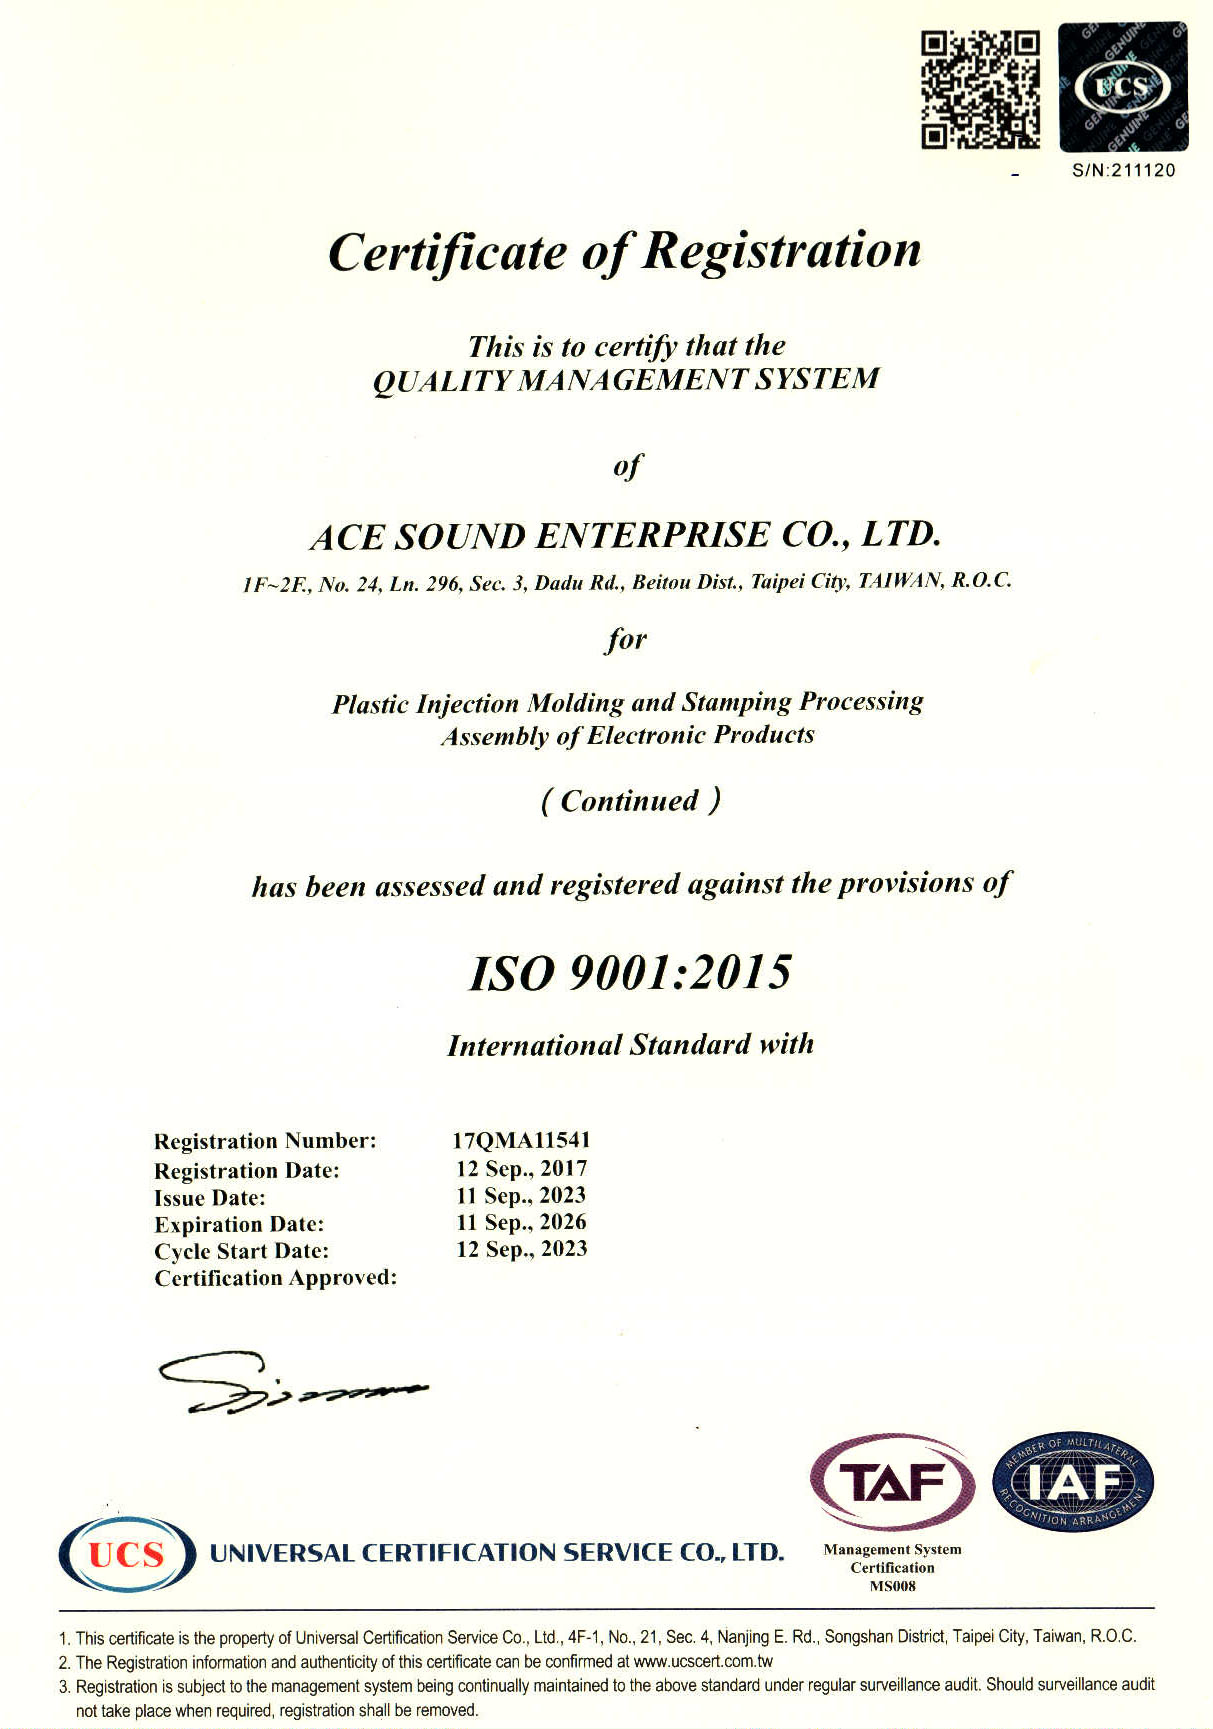 亞聲ISO 9001 英文證書首頁